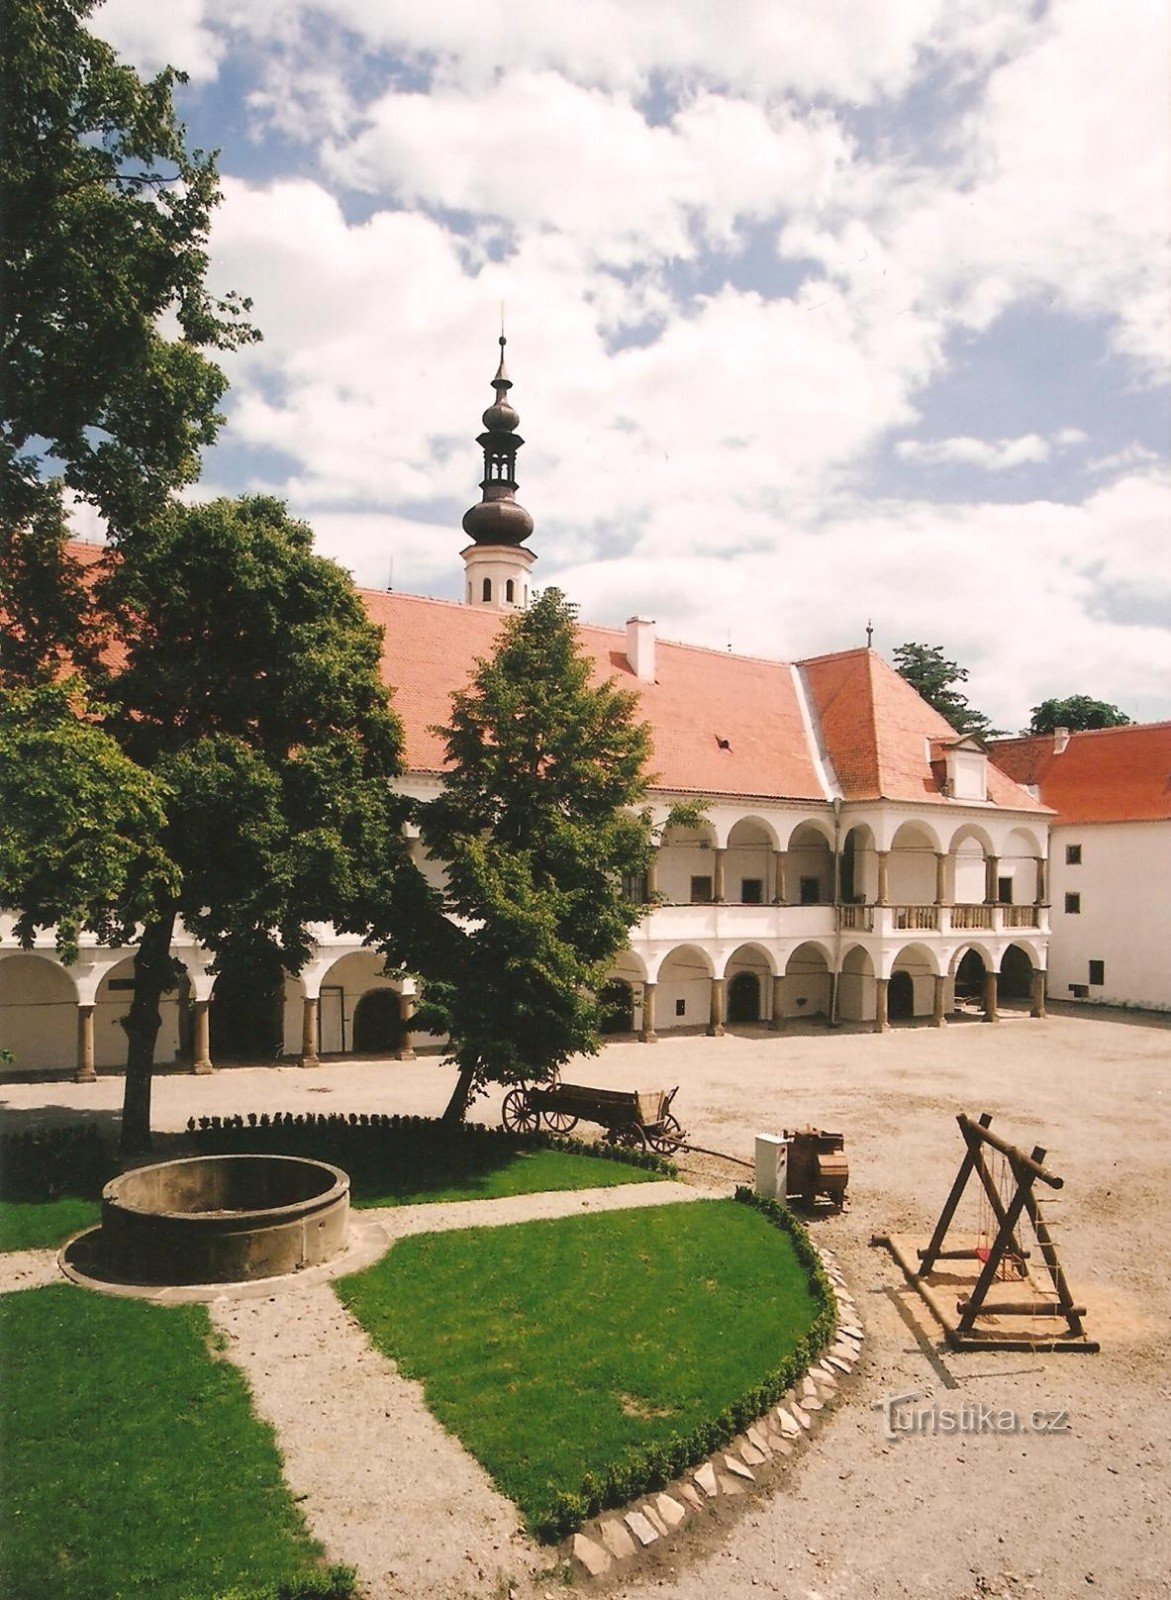 Oslavanský zámek